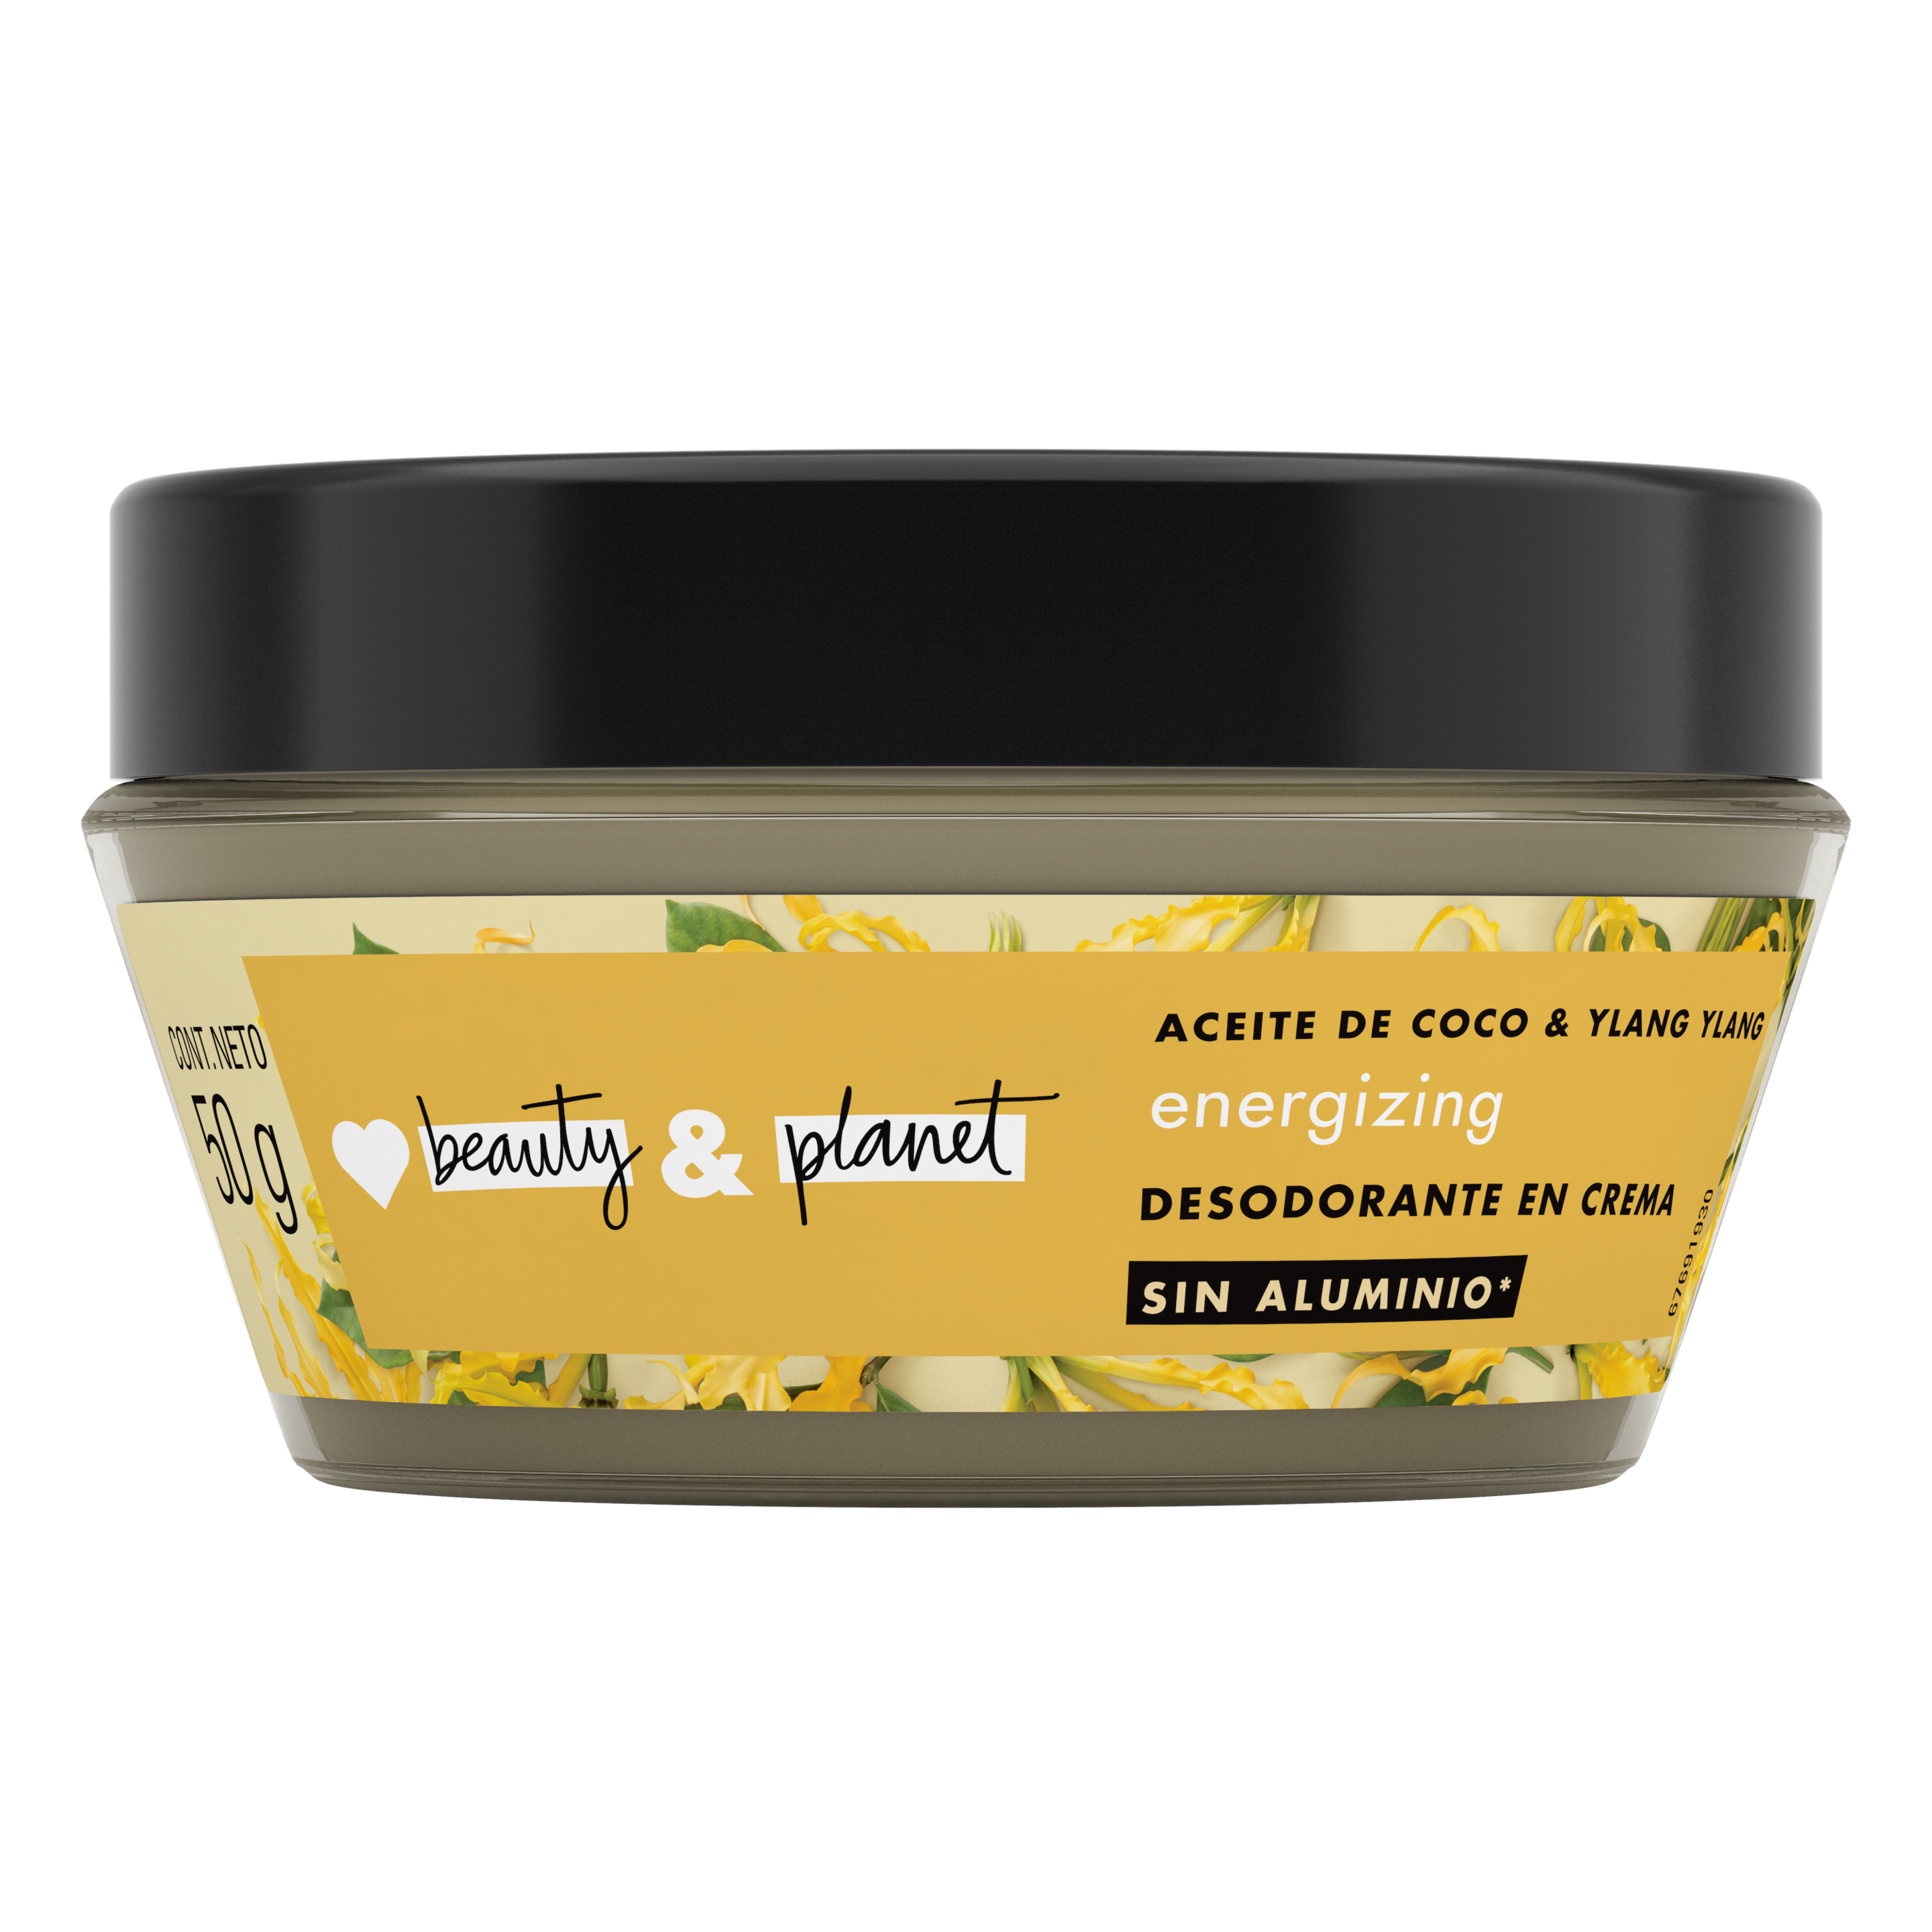 Desodorante en crema aceite de coco & ylang ylang